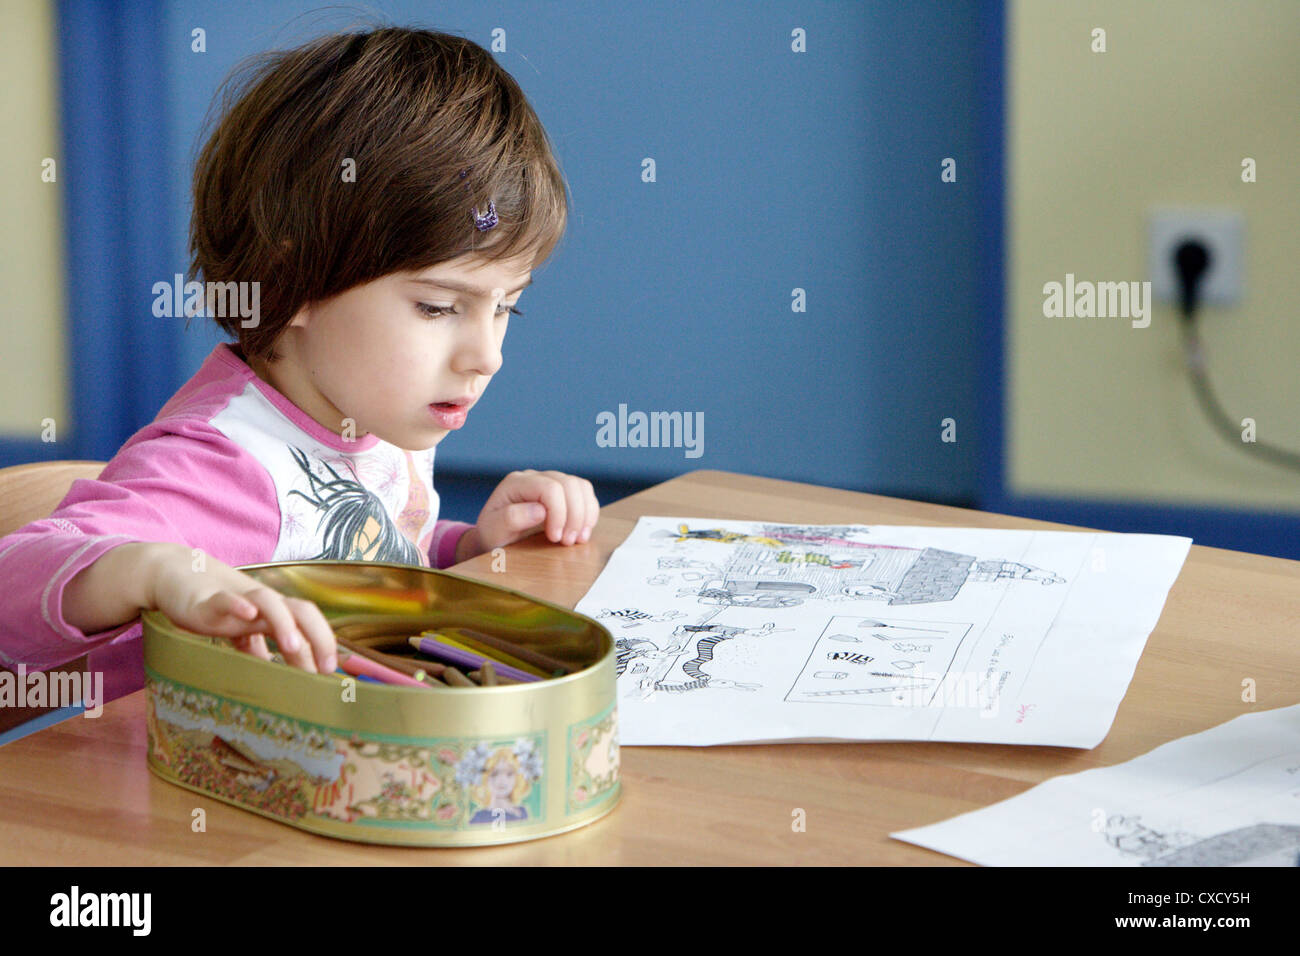 Berlin, generic preschool education in an elementary school Stock Photo